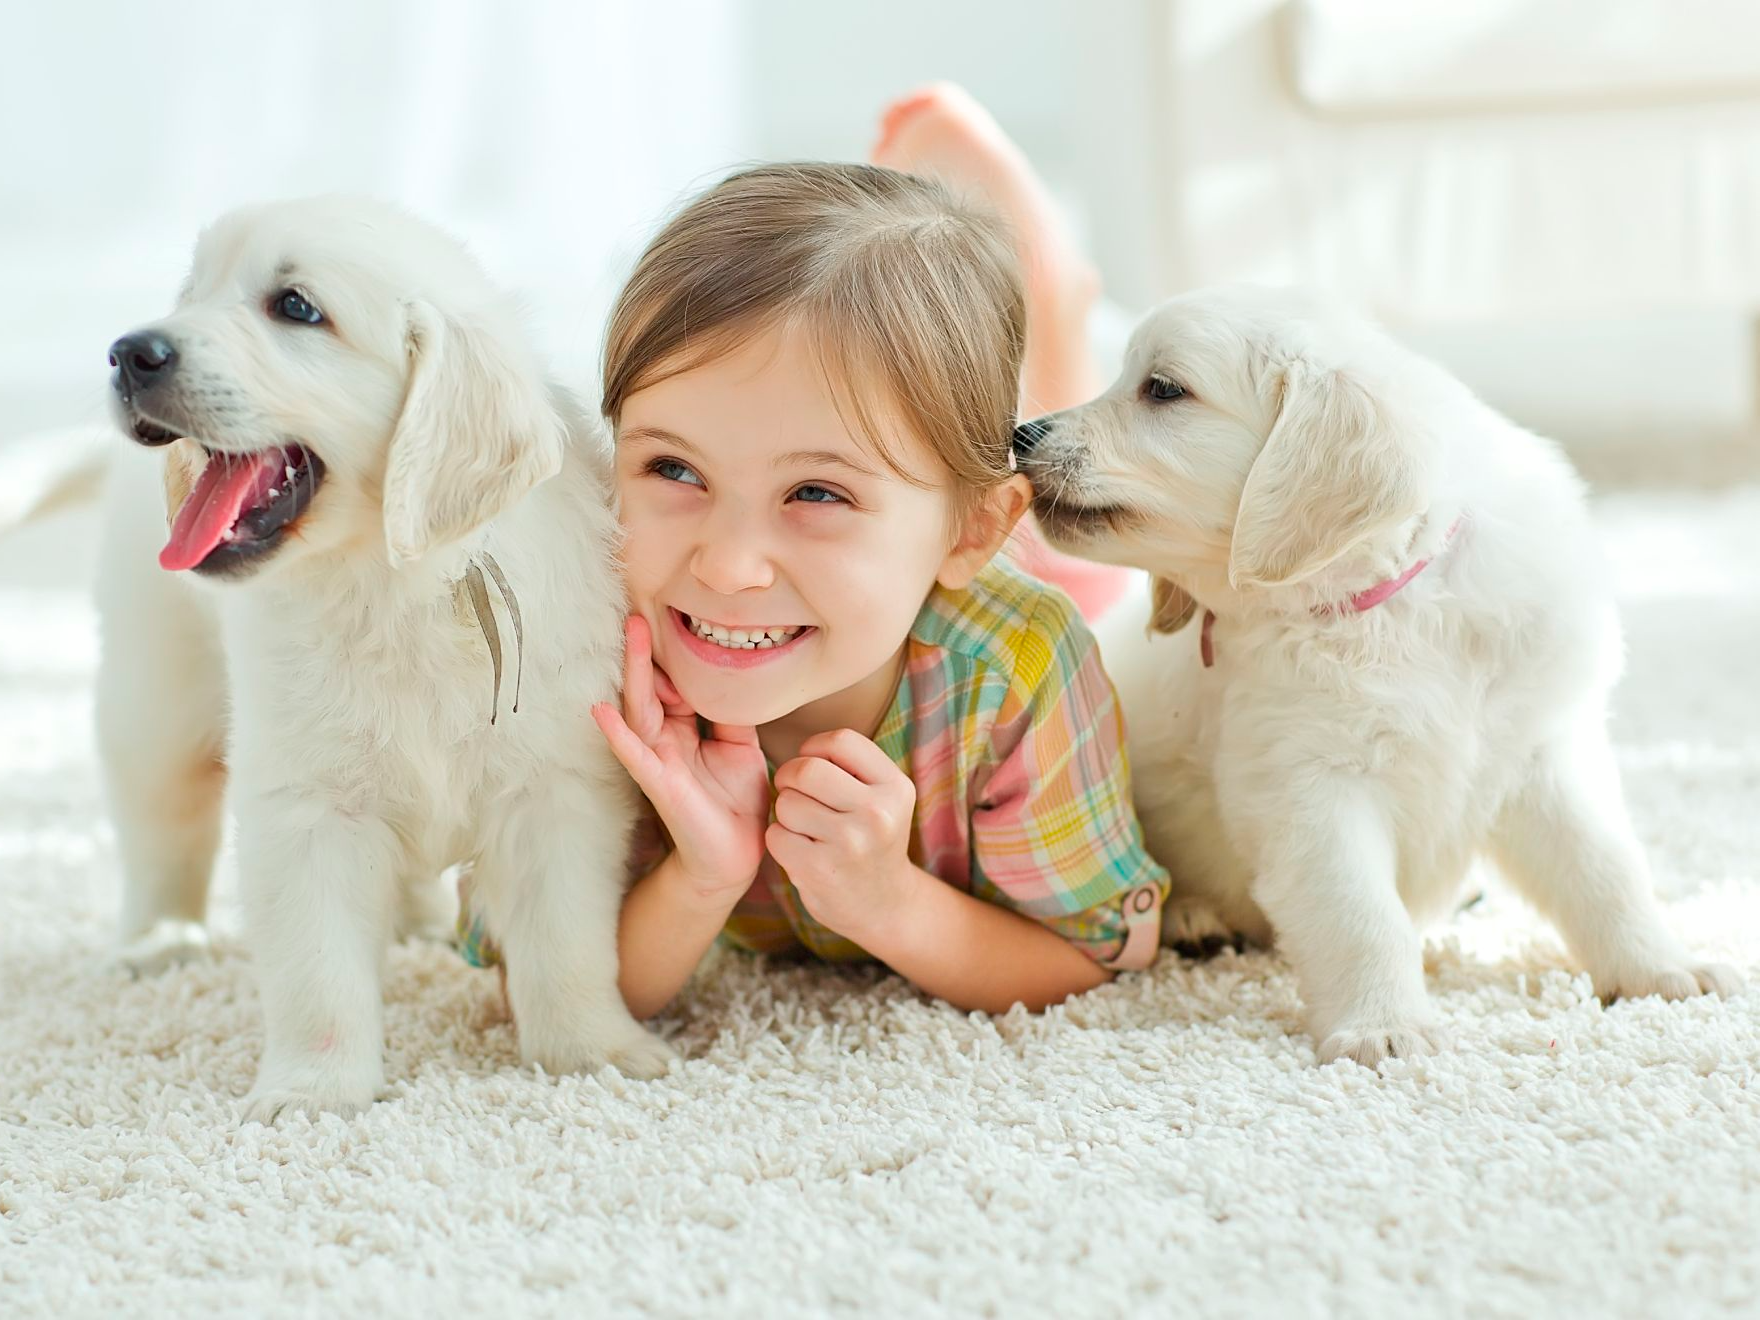 bambino sorridente sdraiato sul tappeto con due cuccioli bianchi